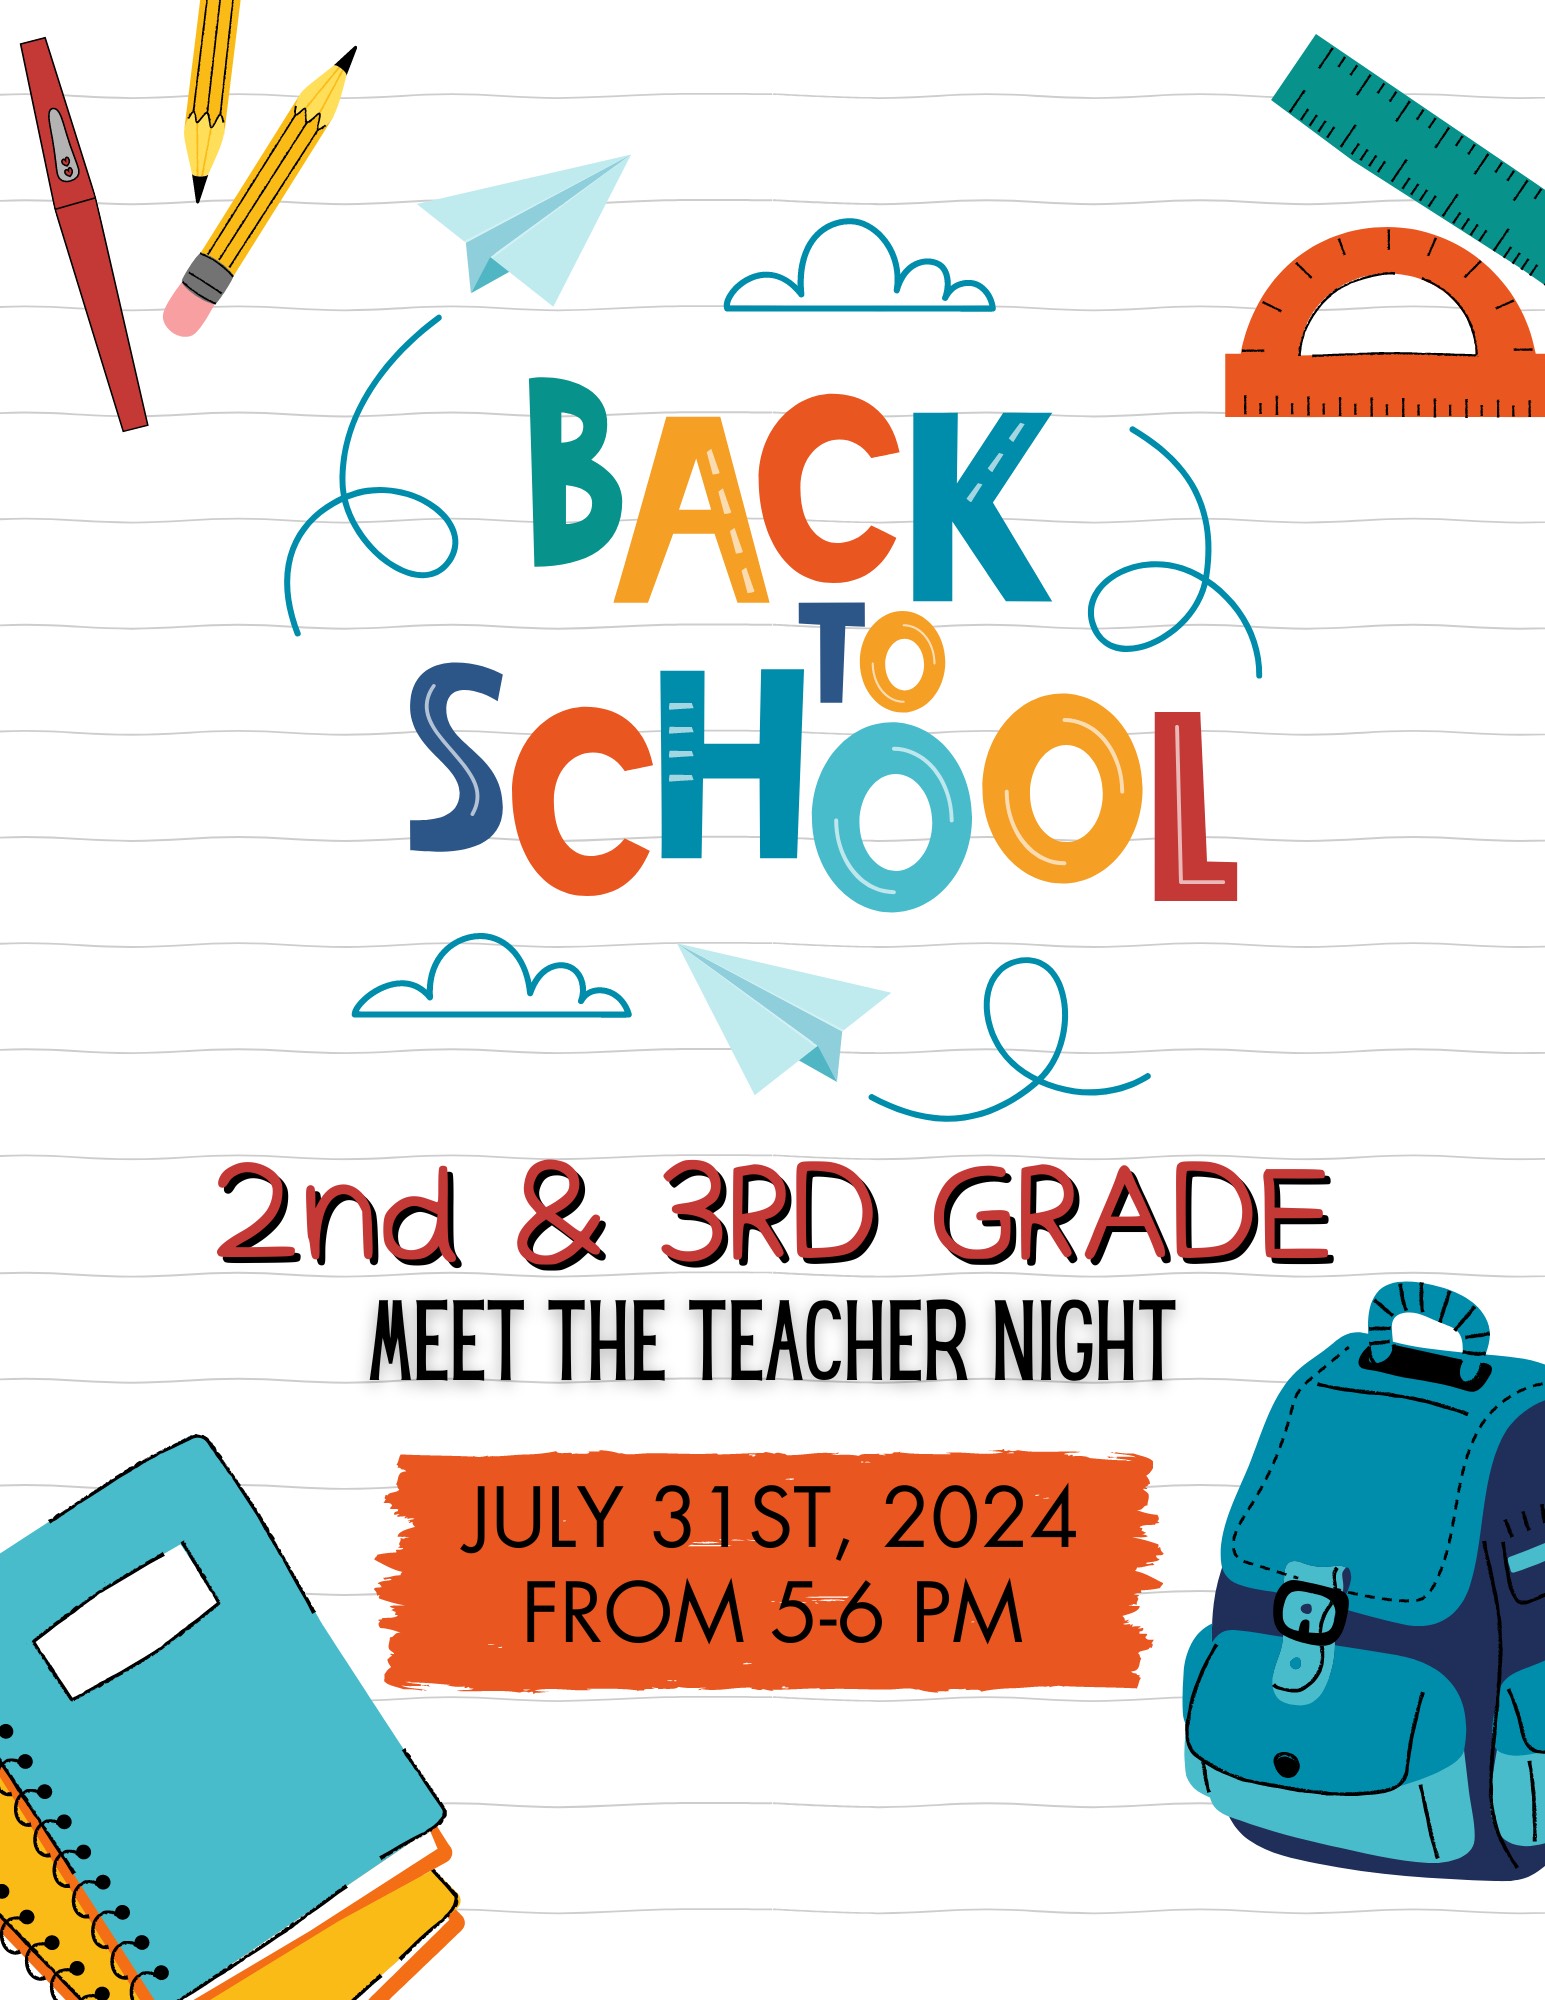 2nd -3rd Grade Meet the Teacher Night July 31, 5-6 pm